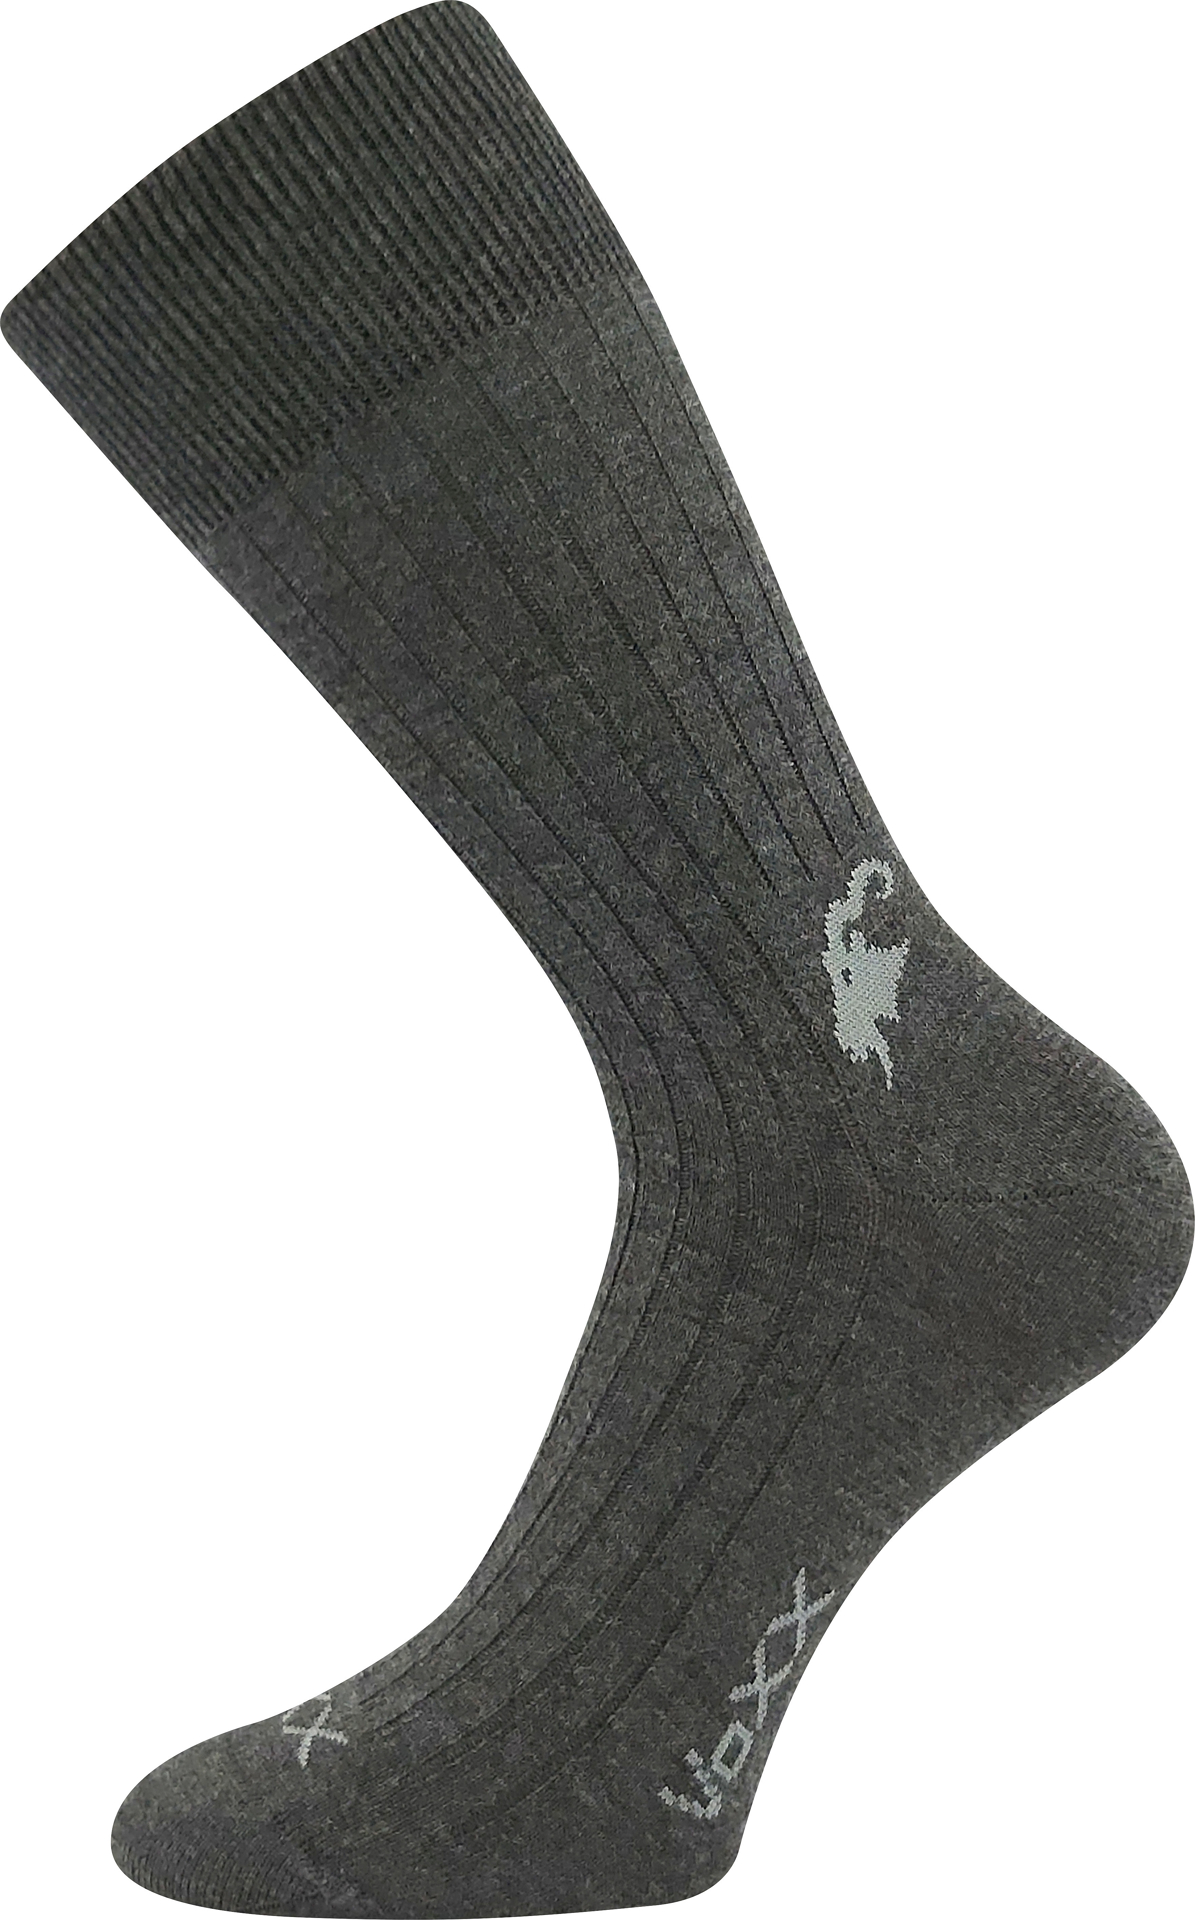 VOXX® ponožky Cashmere love antracit 3 pár 43-46 120988